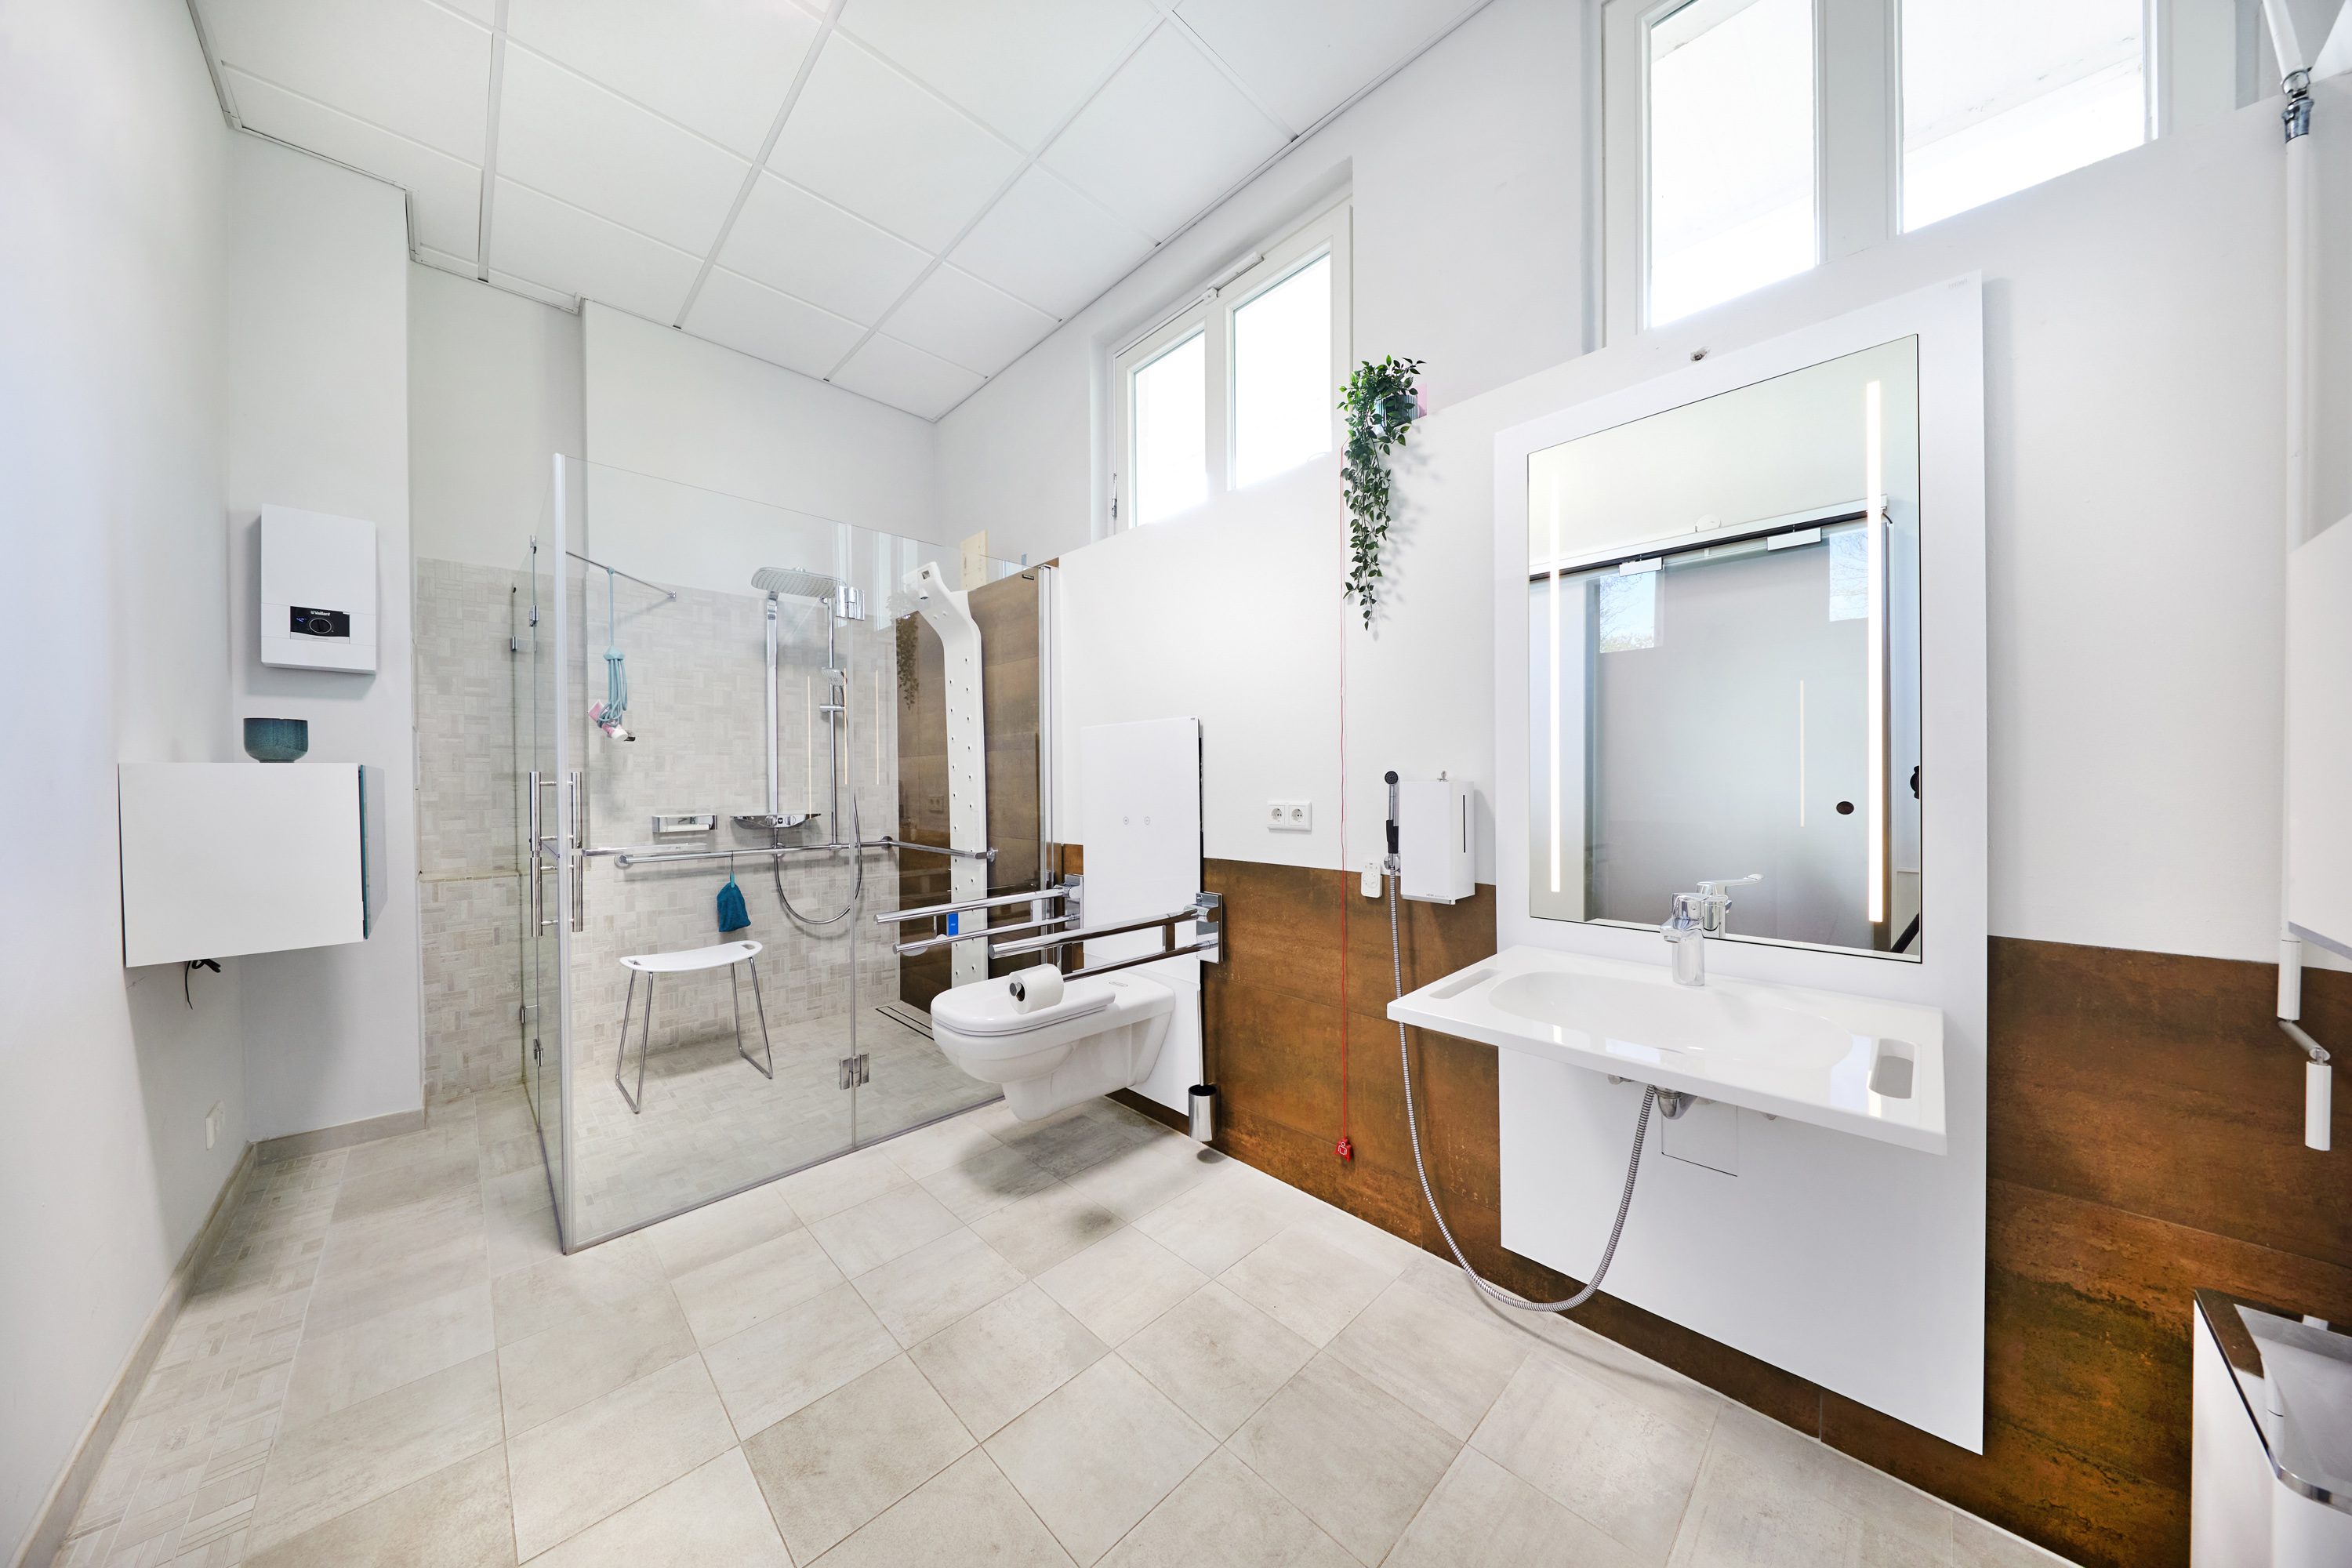 Das Bild zeigt ein Ausstellungsbad mit höhenverstellbaren Waschtisch und höhenverstellbaren WC sowie einem rollstuhlgerechten Duschplatz.